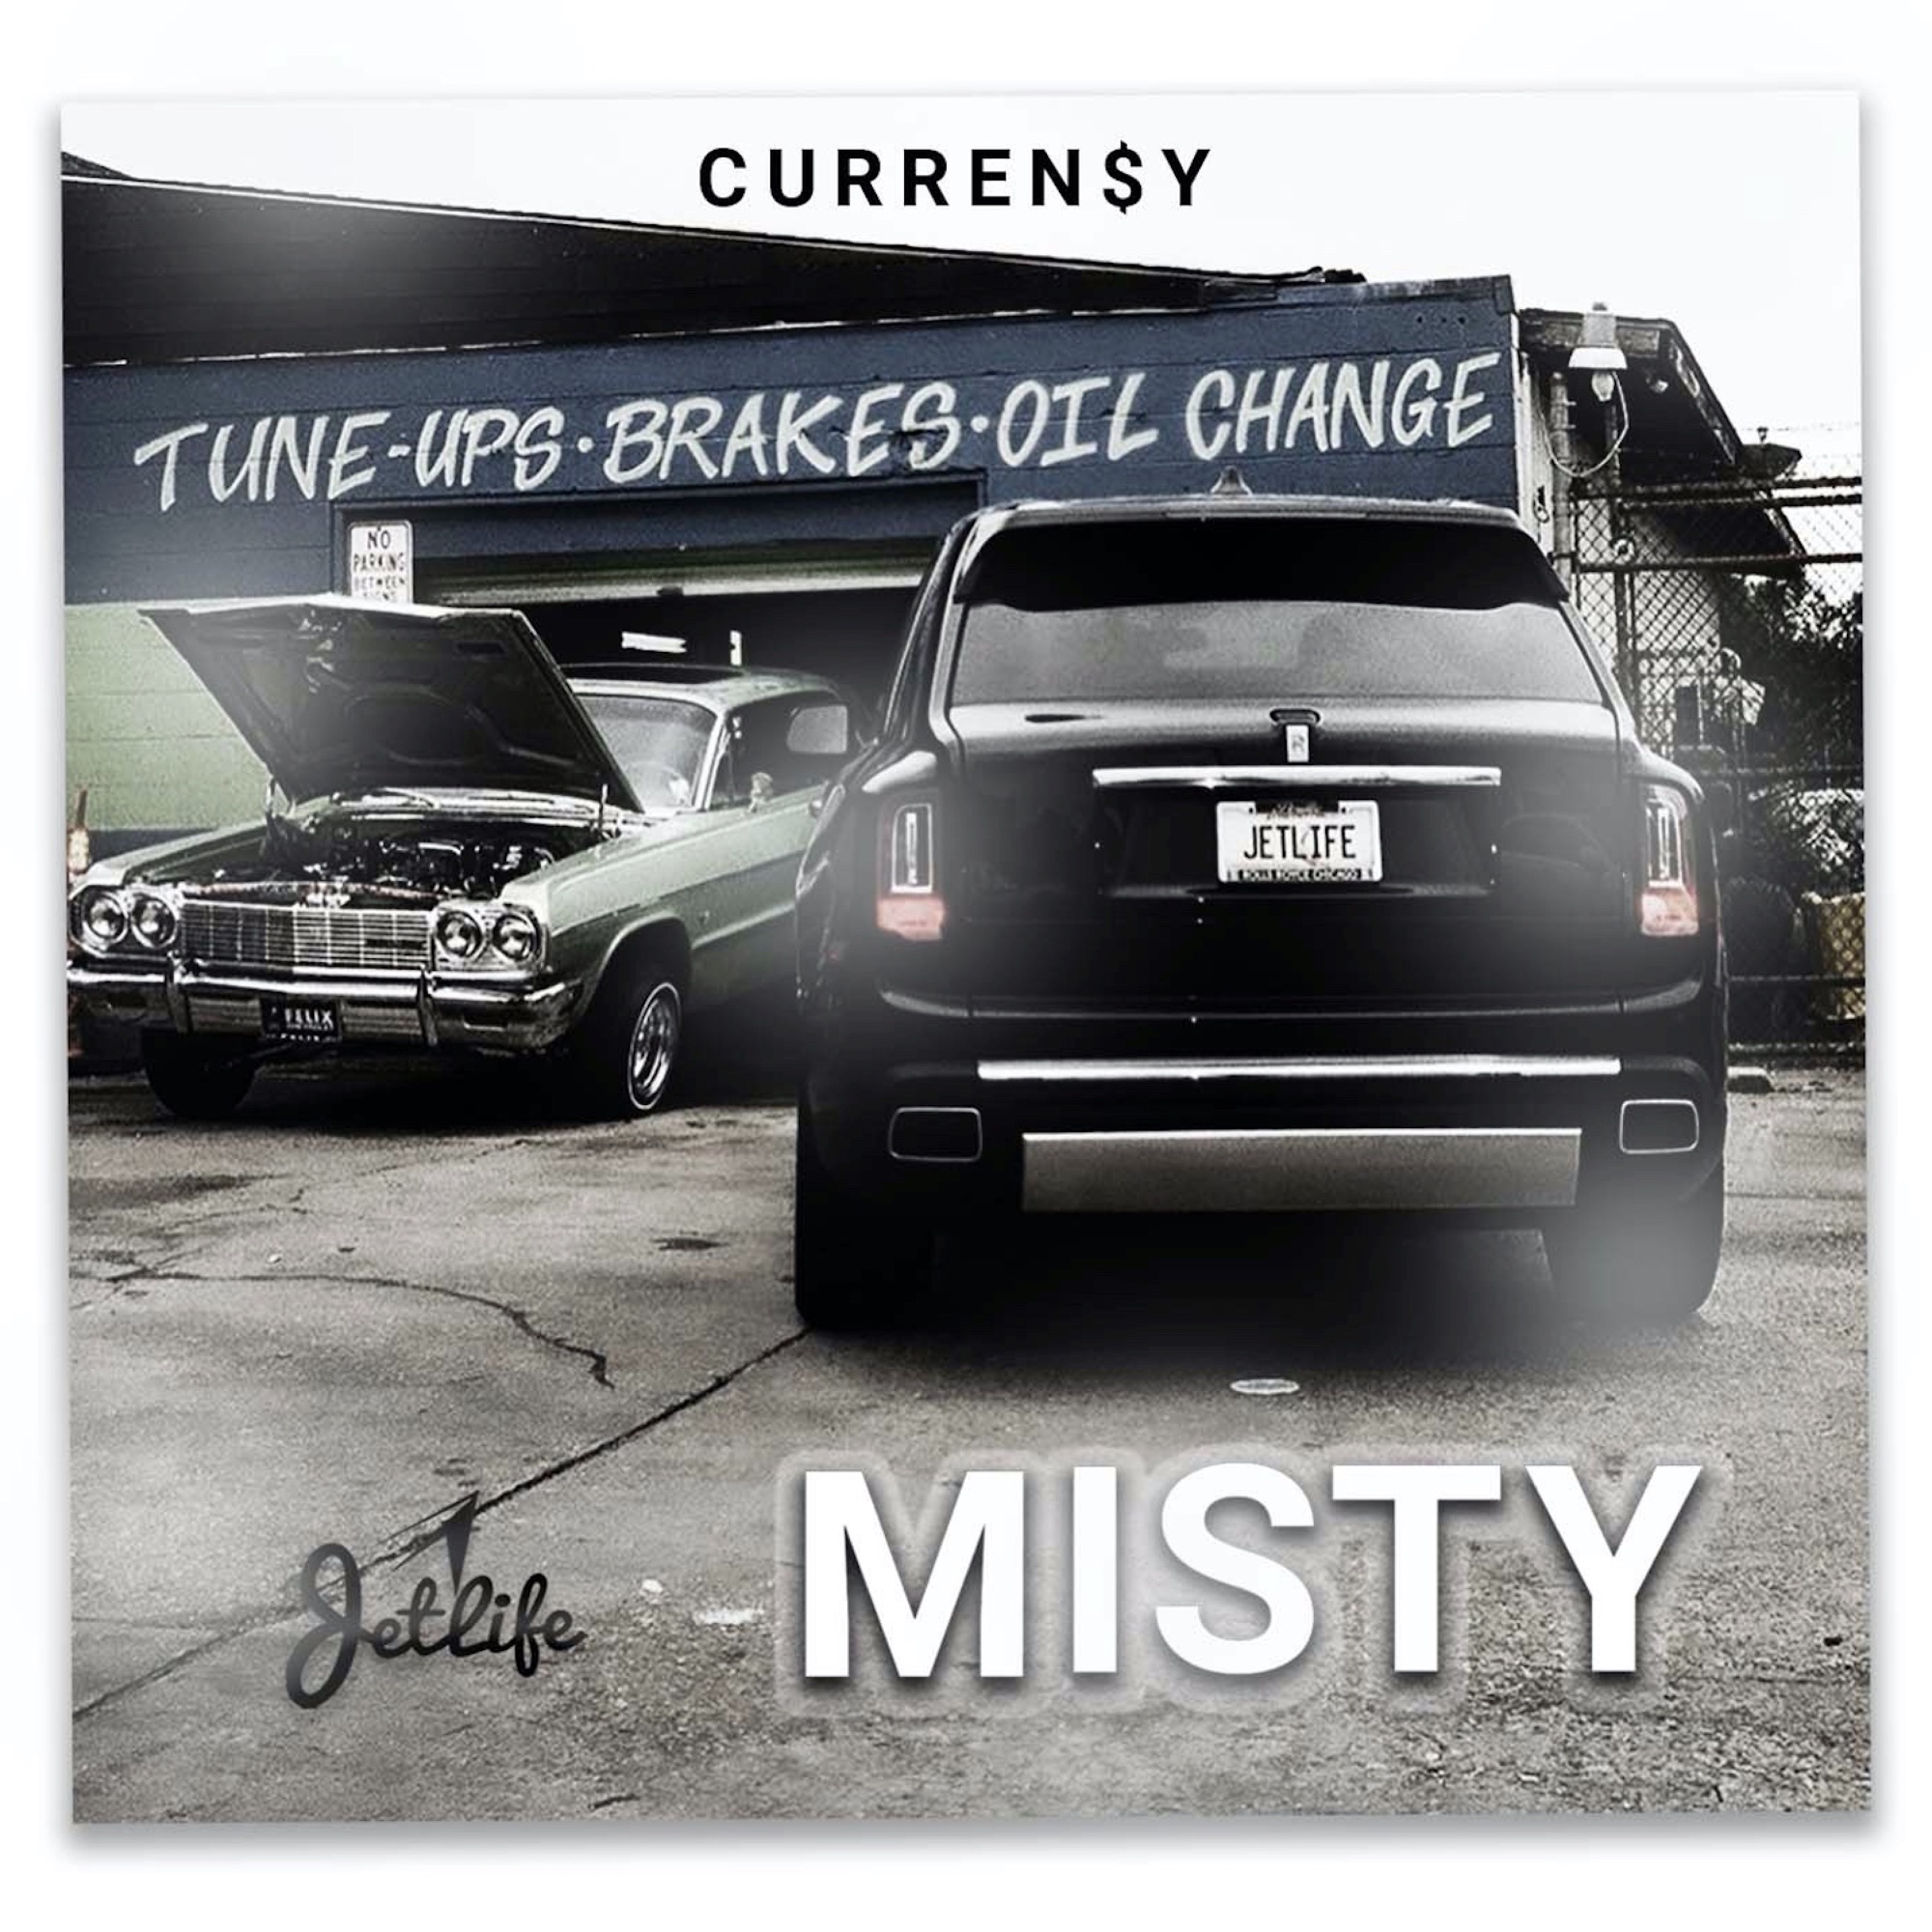 Curren$y - Misty - Single